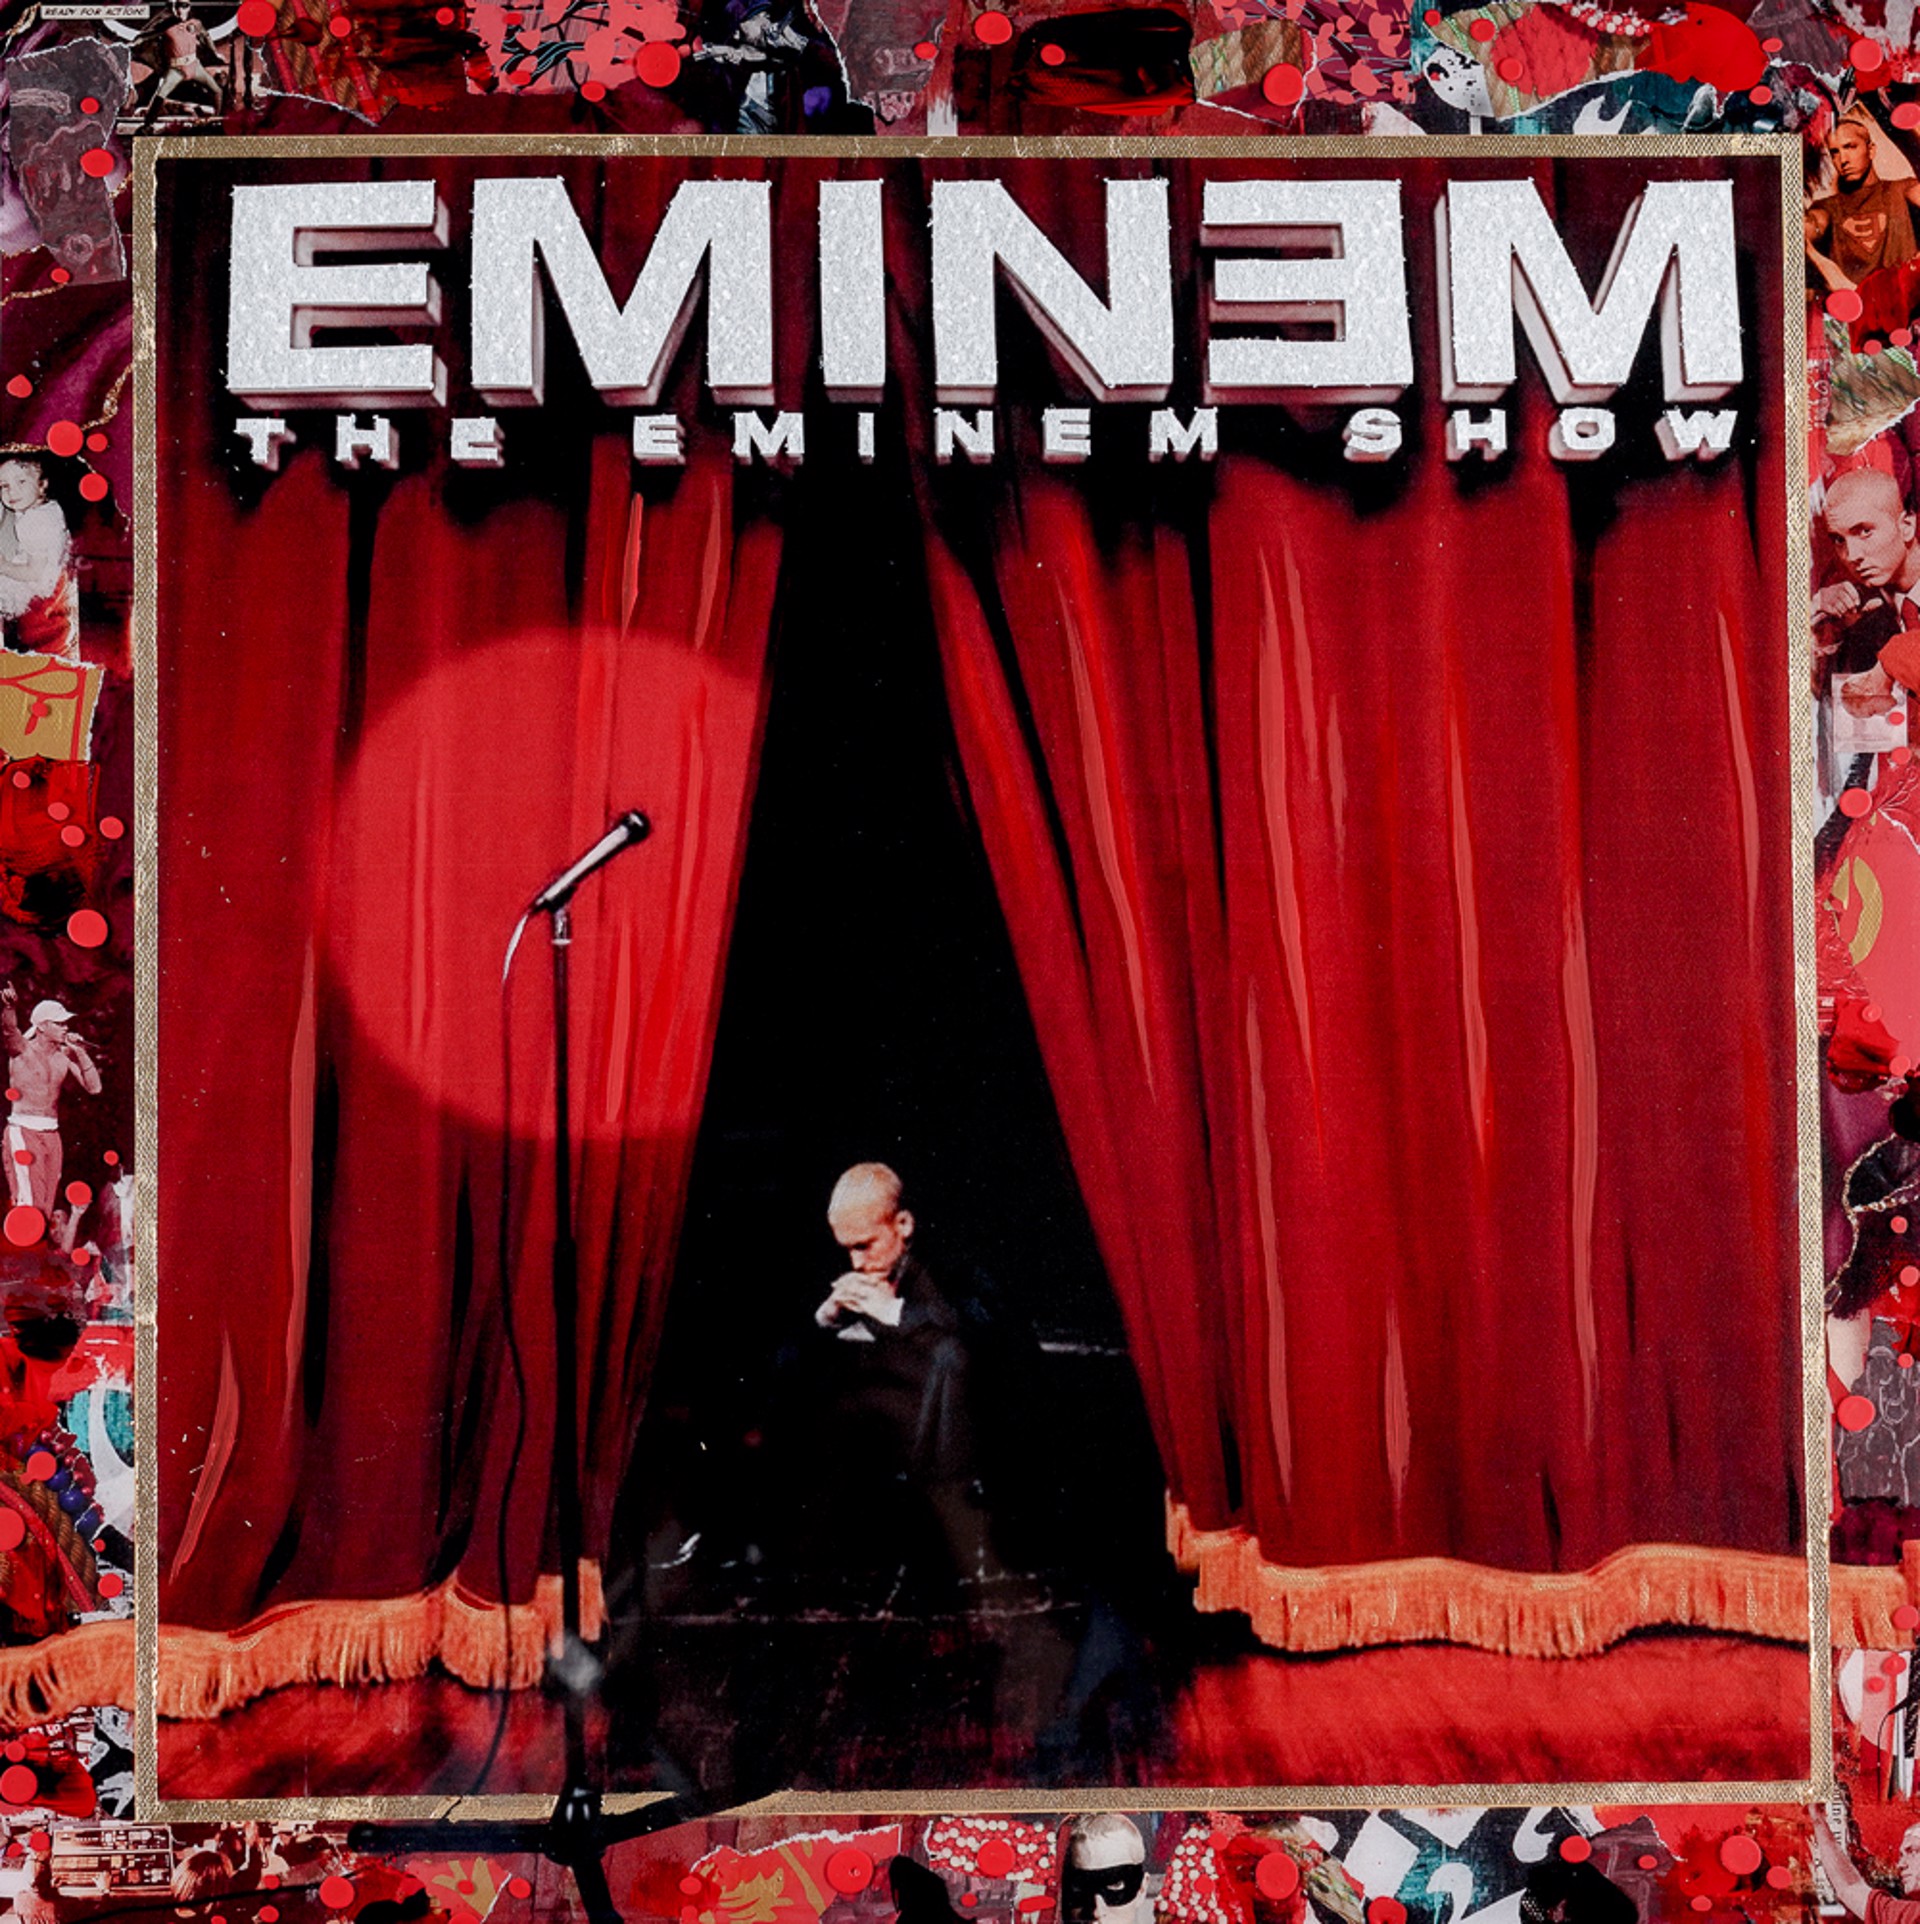 Eminem "The Eminem Show" by De Von